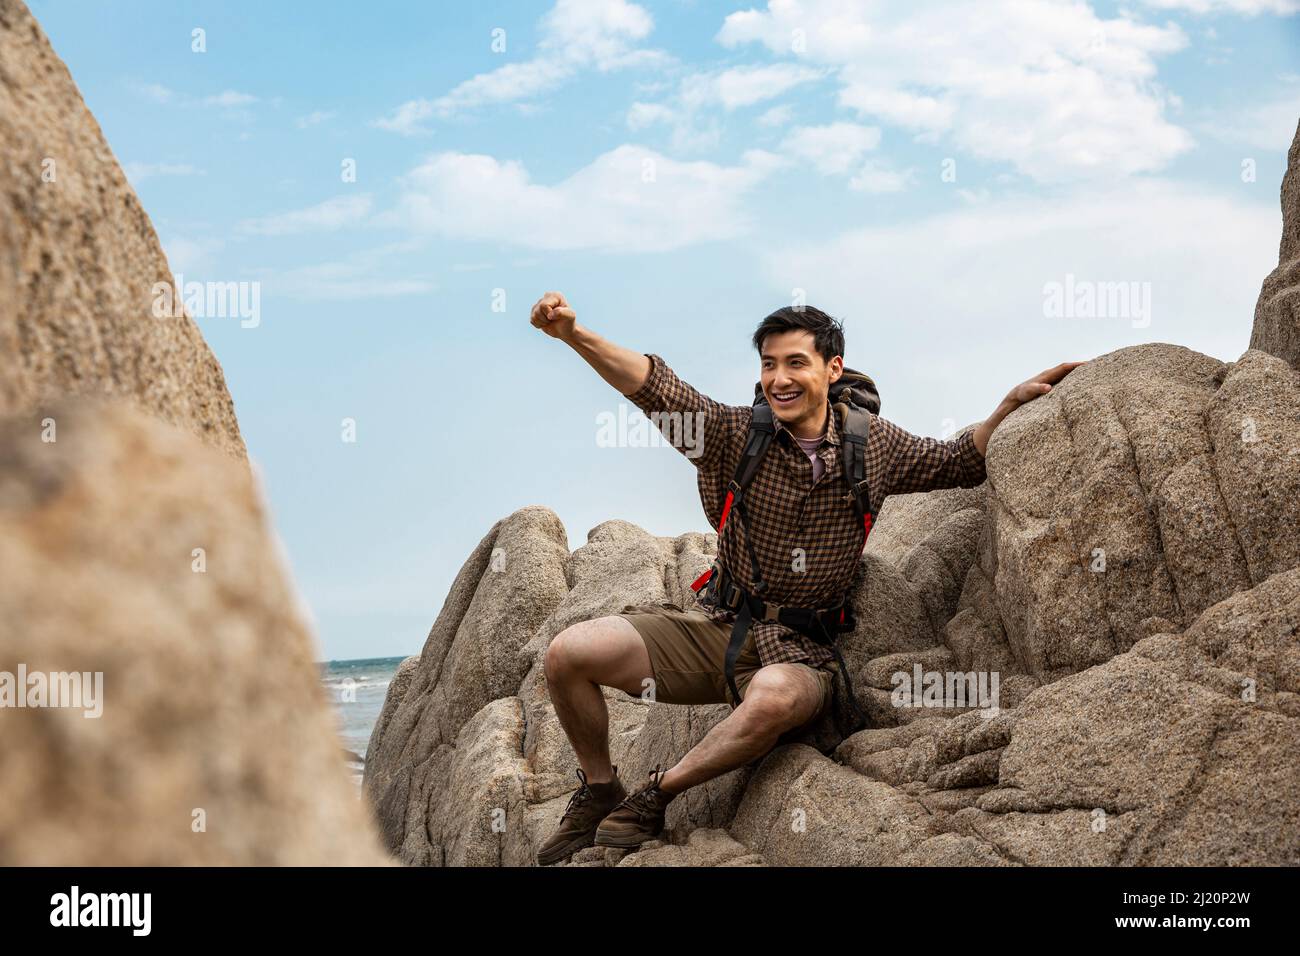 Encourager un jeune routard avec des bras étirés sur les rochers de la plage - photo de stock Banque D'Images